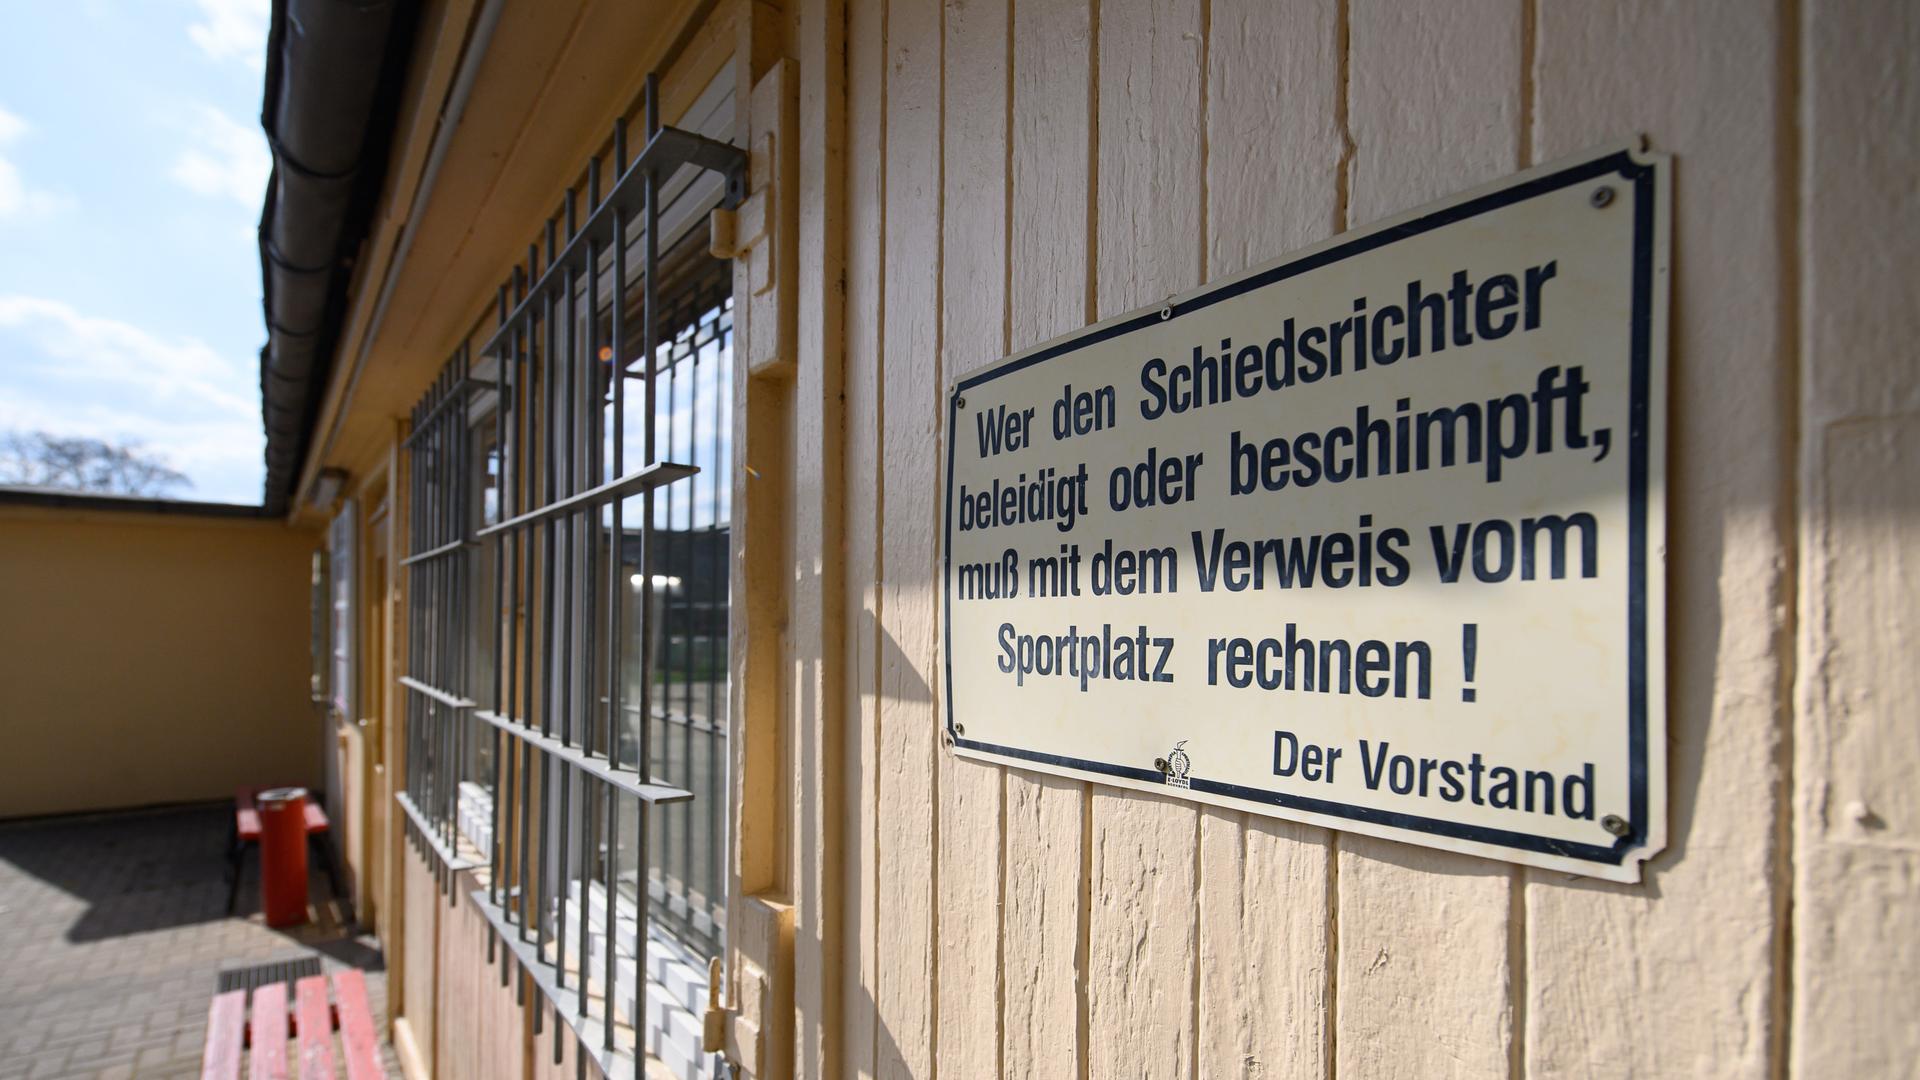 Ein Schild "Wer den Schiedsrichter beleidigt oder beschimpft, muß mit dem Verweis vom Sportplatz rechnen! Der Vorstand" hängt am Funktionsgebäude der SG Motor Trachenberge am Sportplatz Aachener Straße.